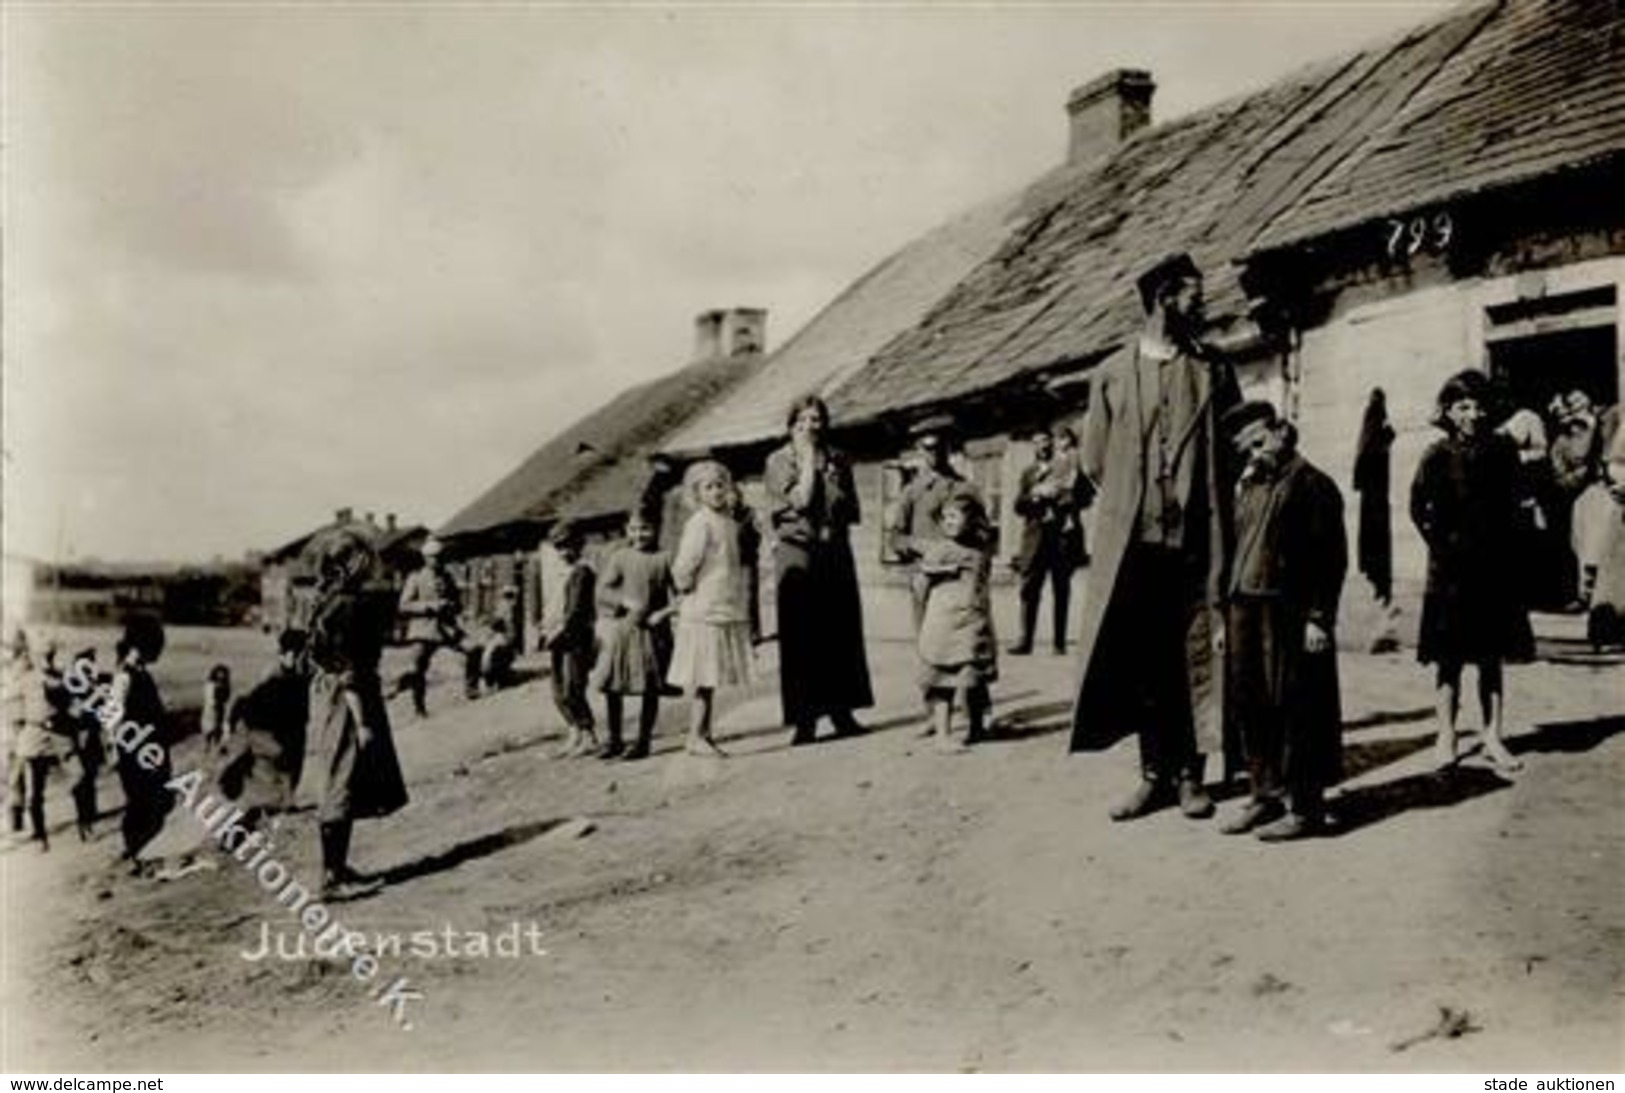 Judaika - Foto-Ak - Judenstadt, 1917 I Judaisme - Jewish